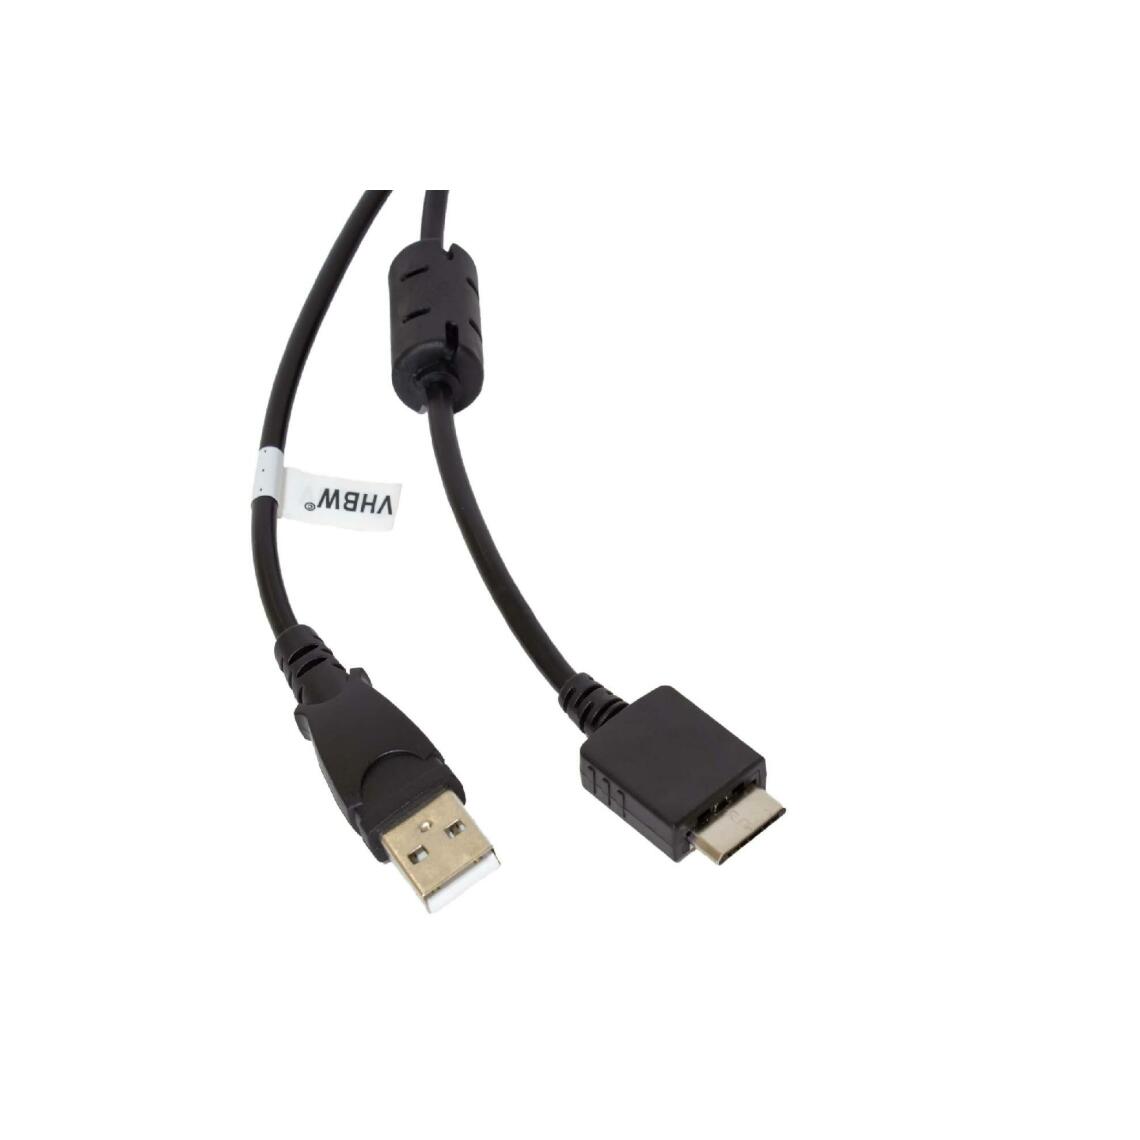 Vhbw - vhbw câble de données USB (type A sur lecteur MP3) câble de chargement compatible avec Sony Walkman NWZ-S774, NWZ-S774BT lecteur MP3 - noir, 150cm - Alimentation modulaire